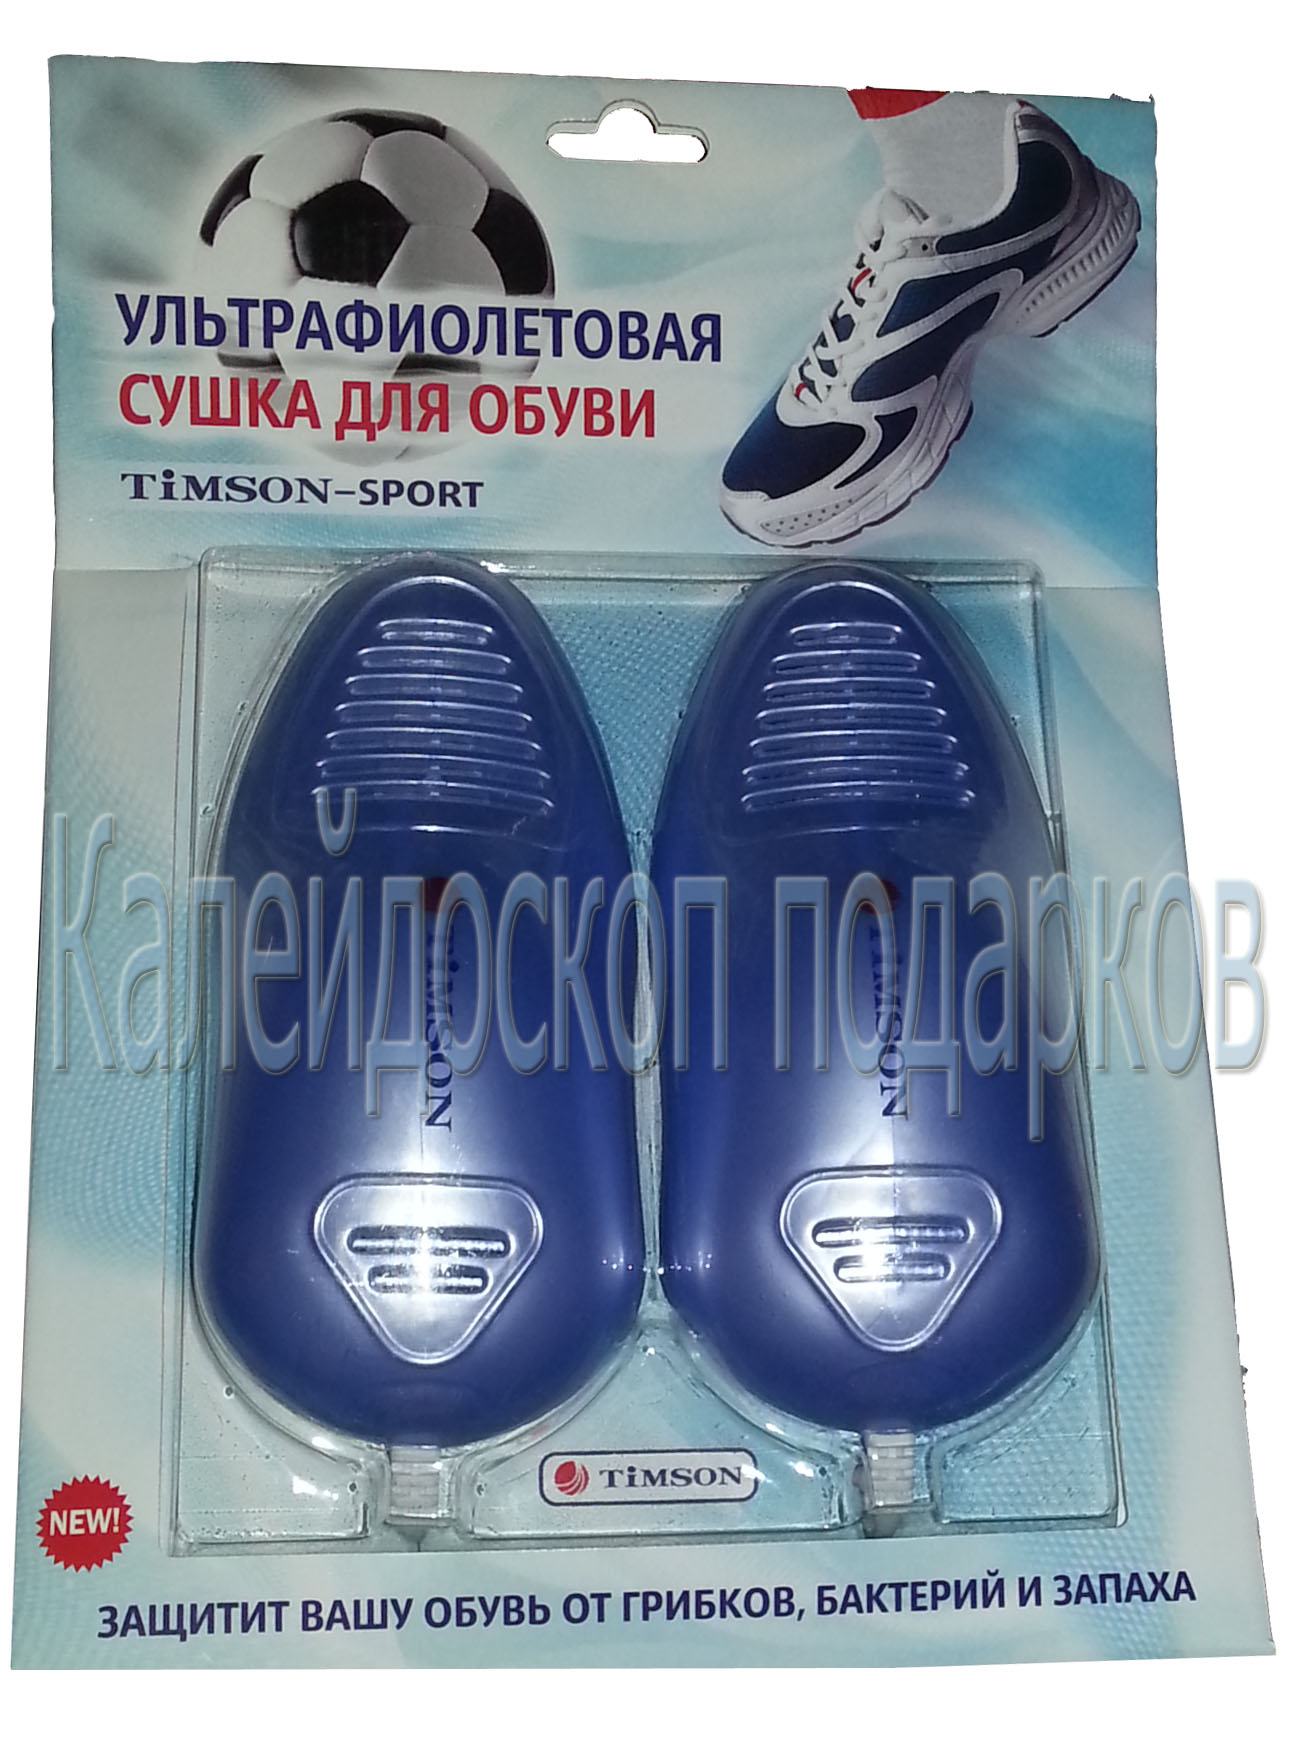 Ультрафиолетовая сушка  для спортивной обуви "TIMSON-SPORT"